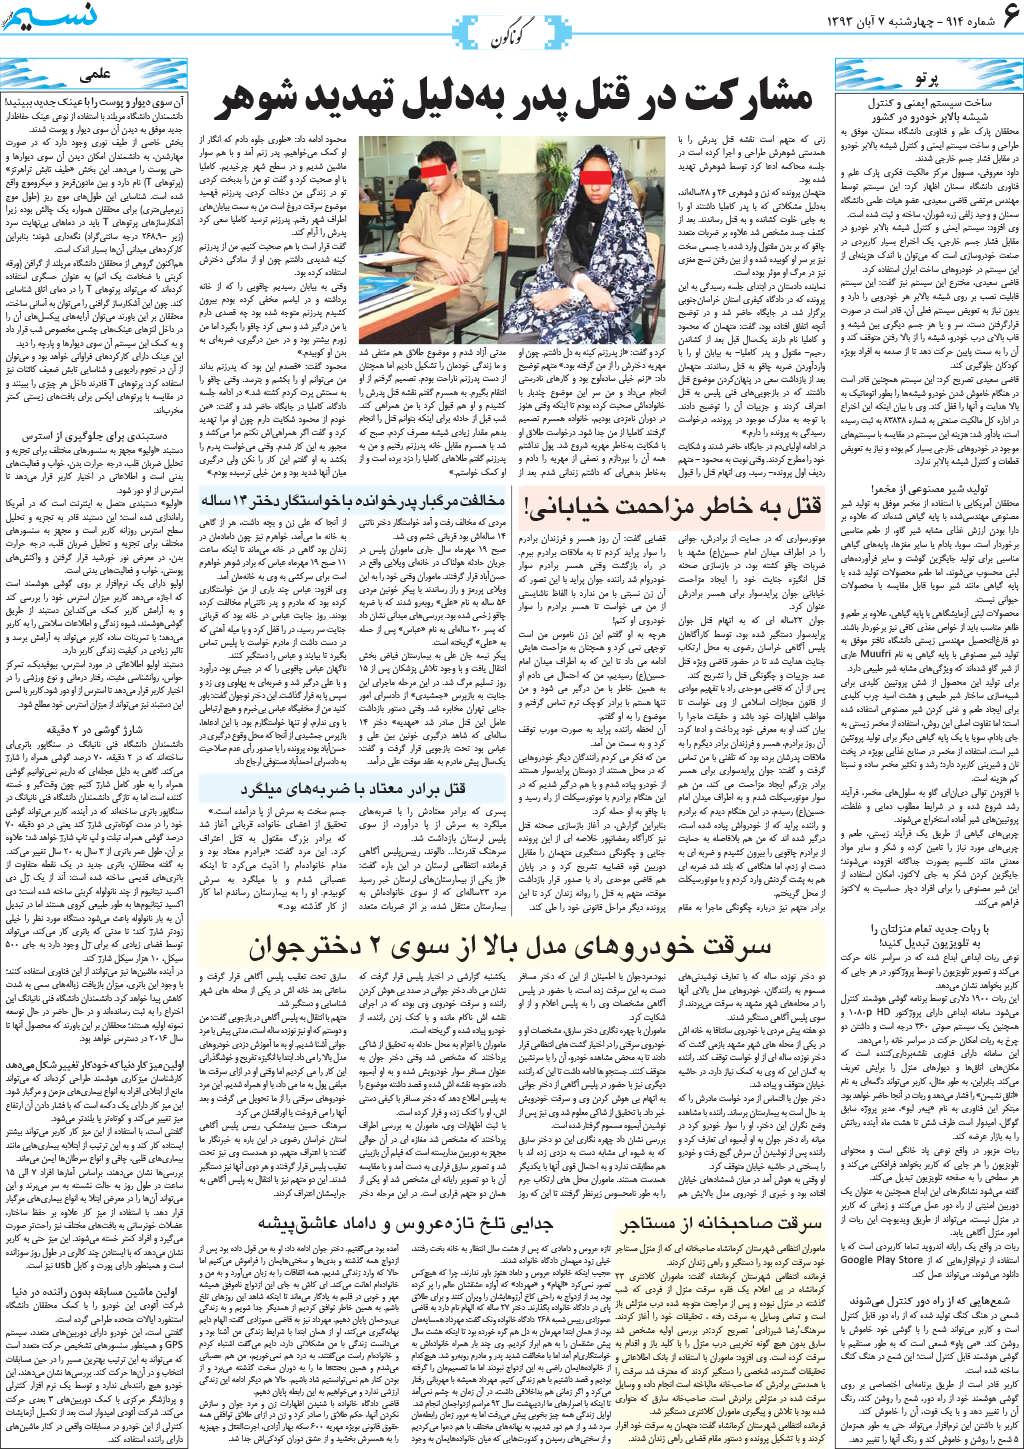 صفحه گوناگون روزنامه نسیم شماره 914